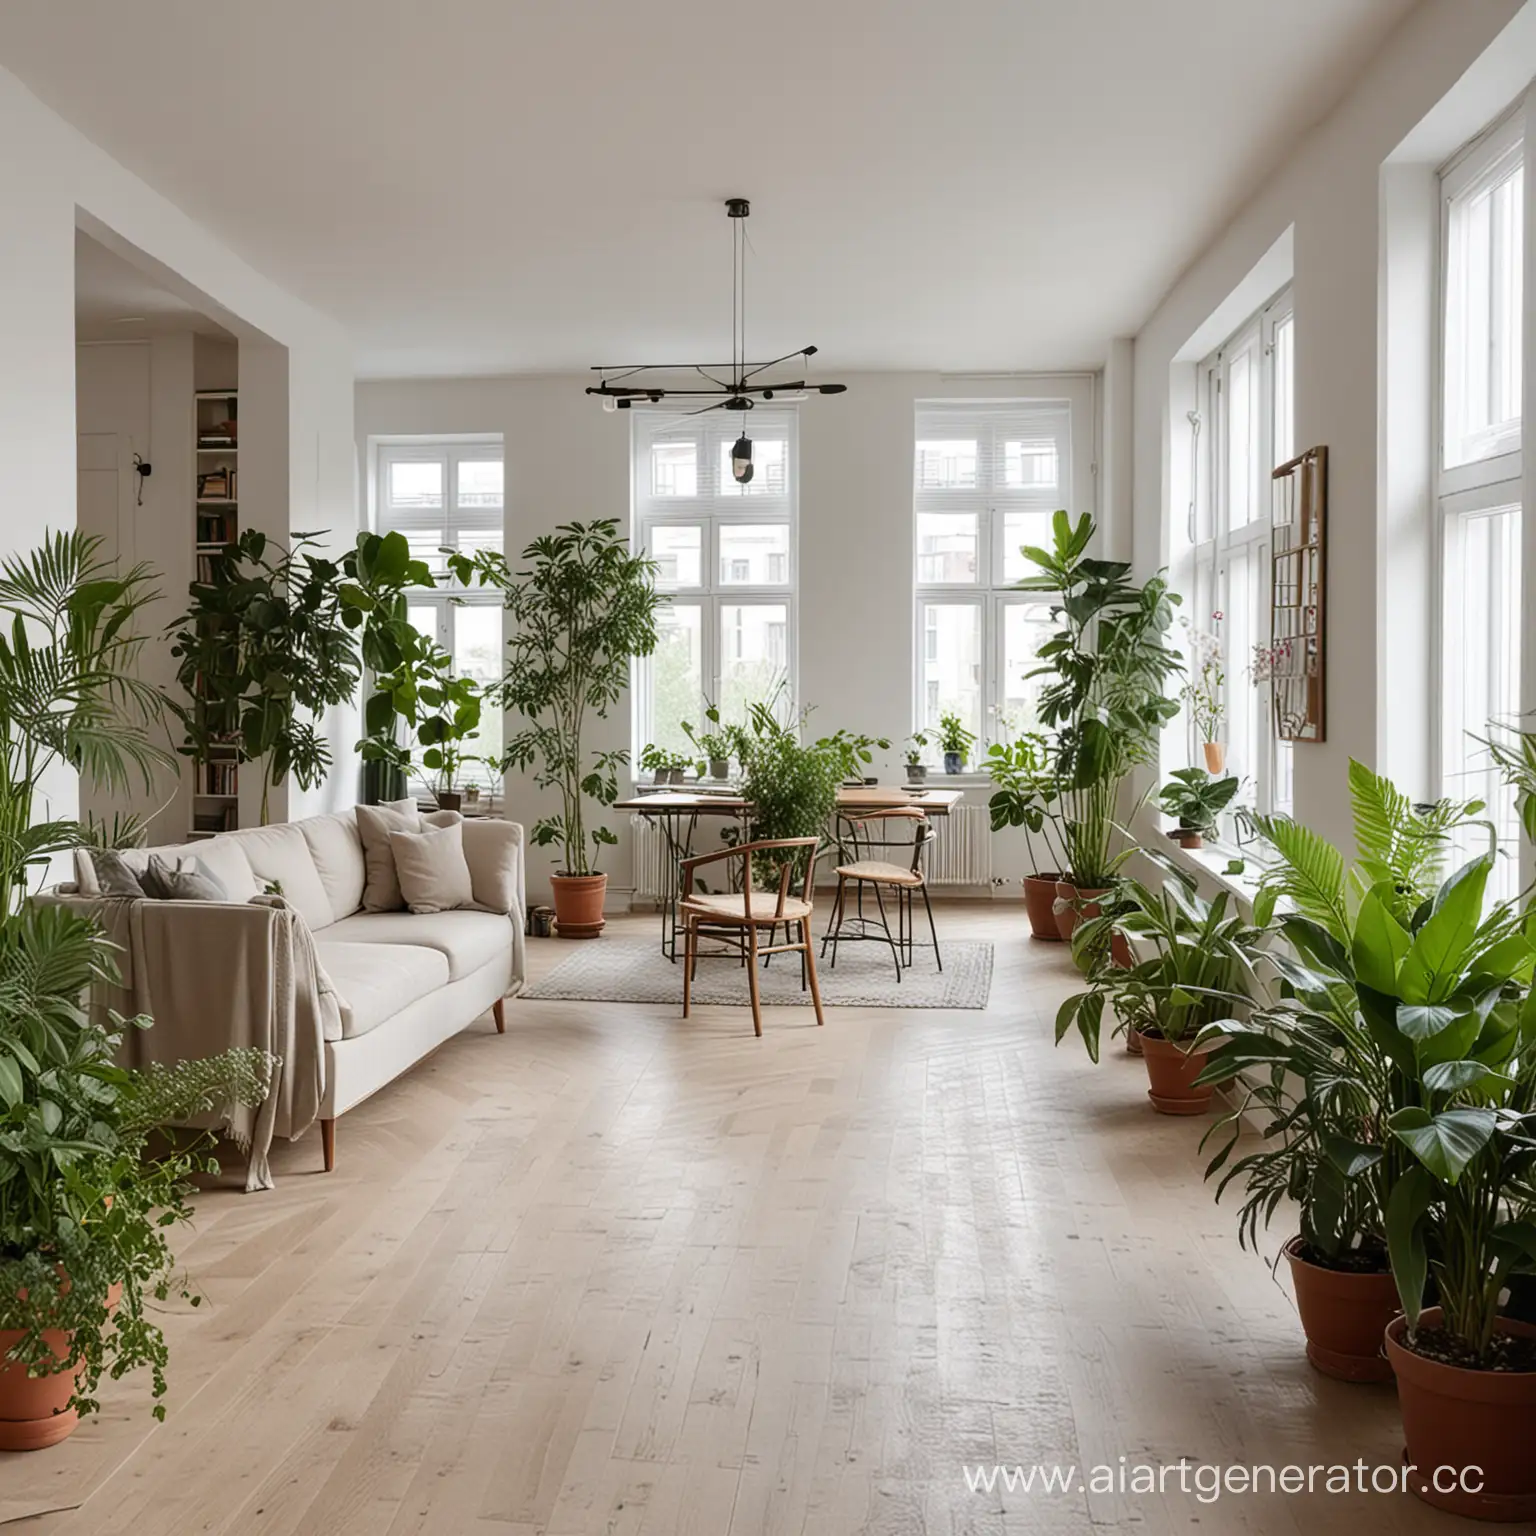 Квартира архитектора в стиле минимализм с большим количеством растений и цветов